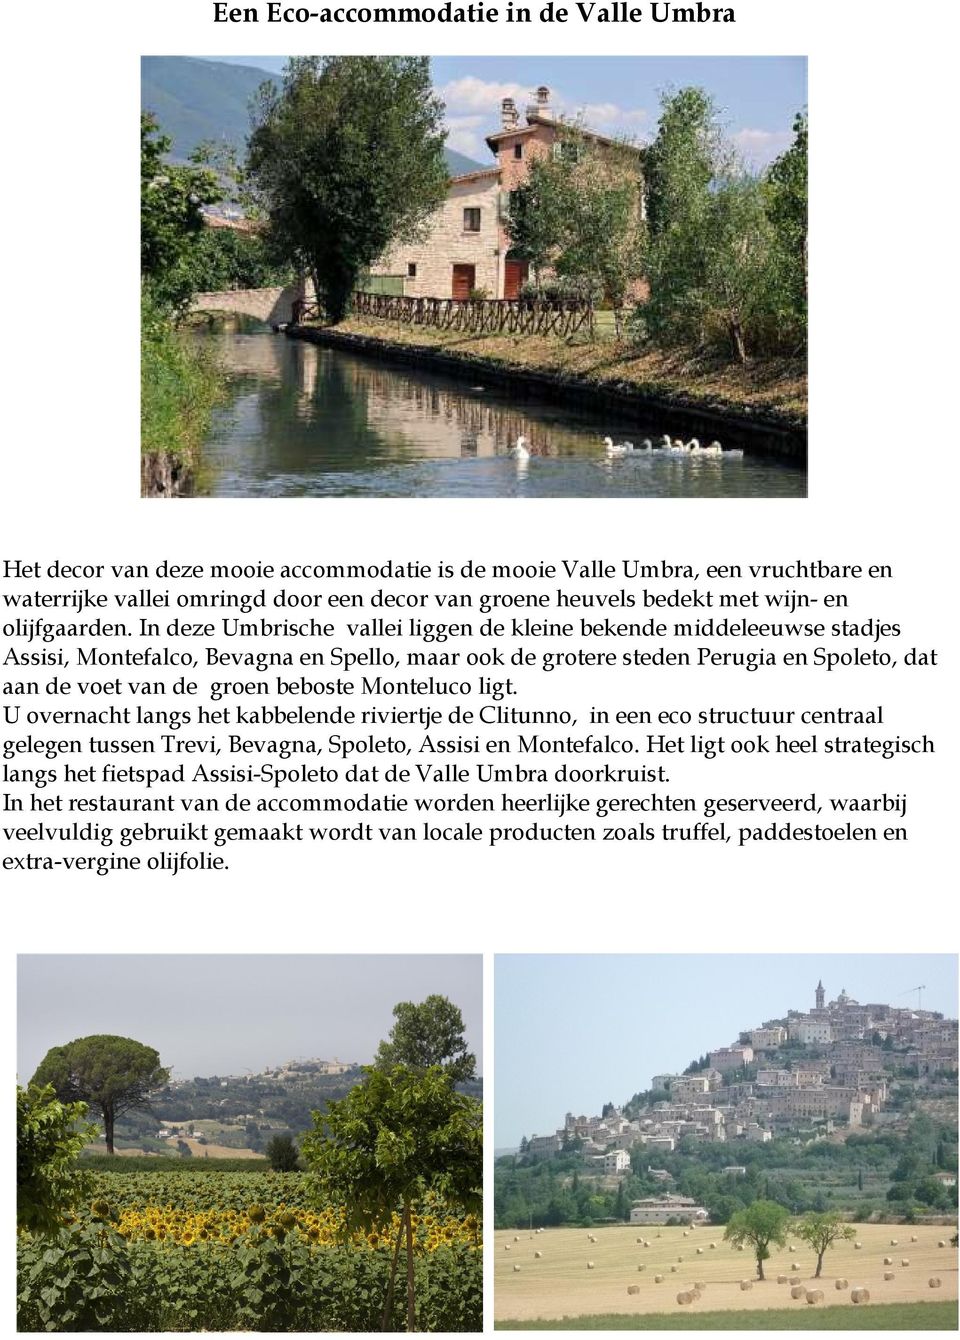 In deze Umbrische vallei liggen de kleine bekende middeleeuwse stadjes Assisi, Montefalco, Bevagna en Spello, maar ook de grotere steden Perugia en Spoleto, dat aan de voet van de groen beboste